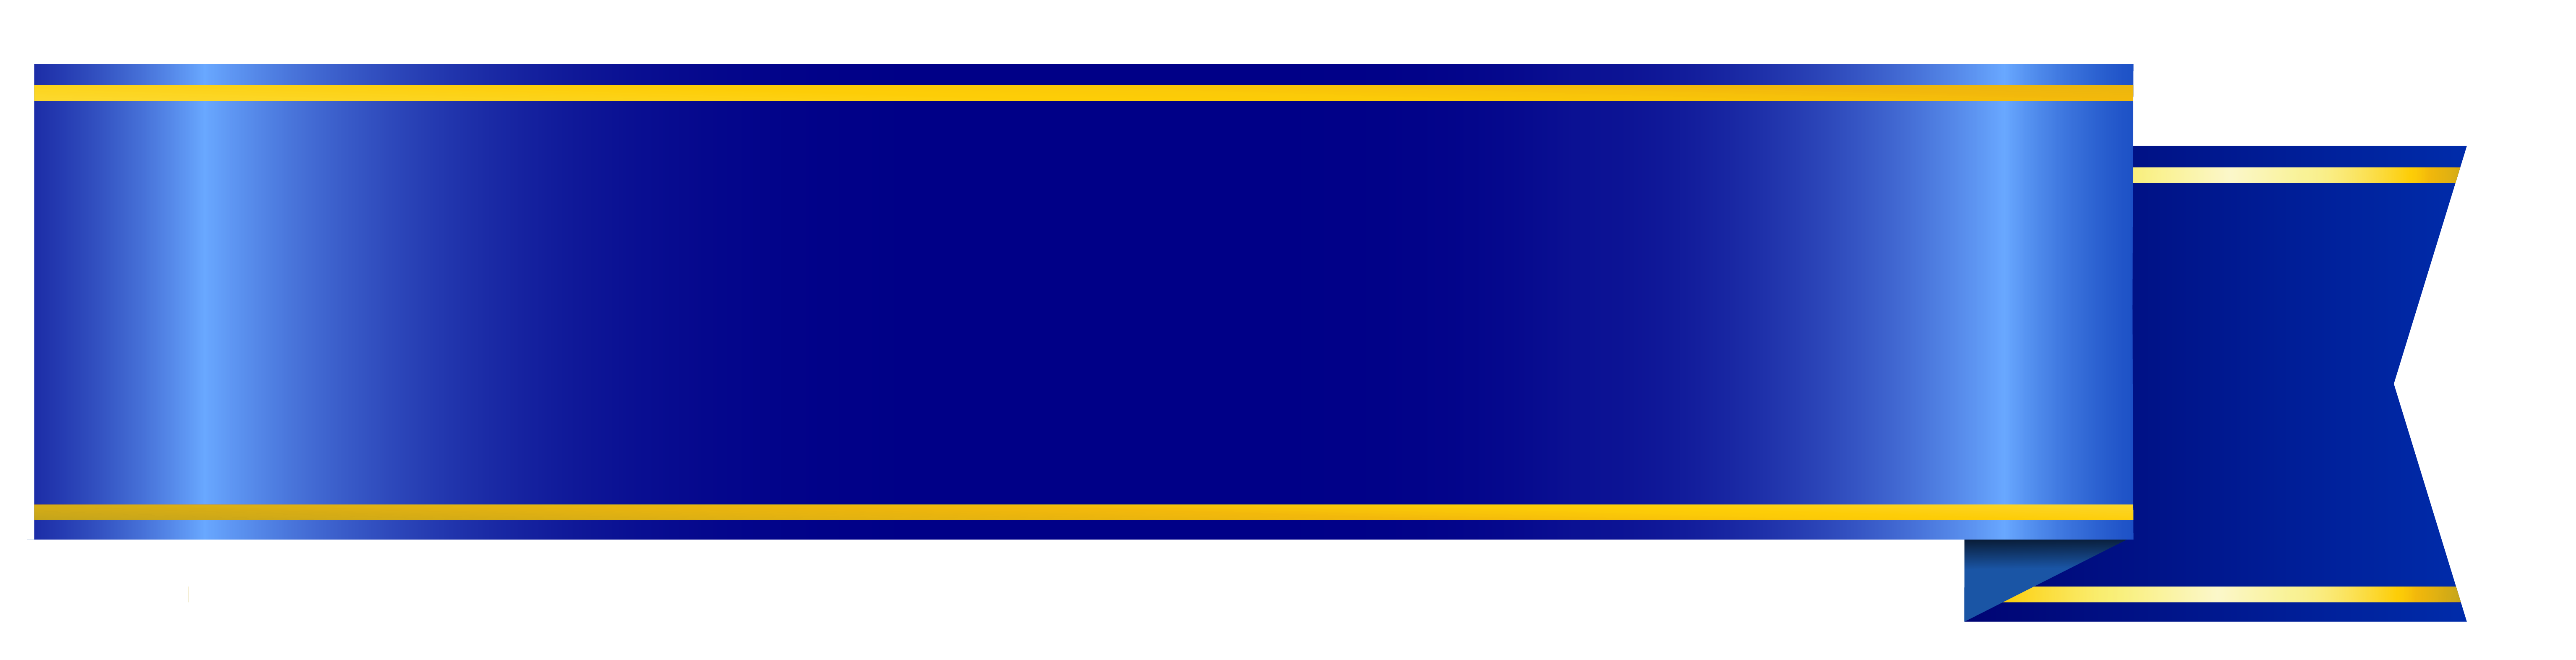 Blue bannière PNG image Transparente